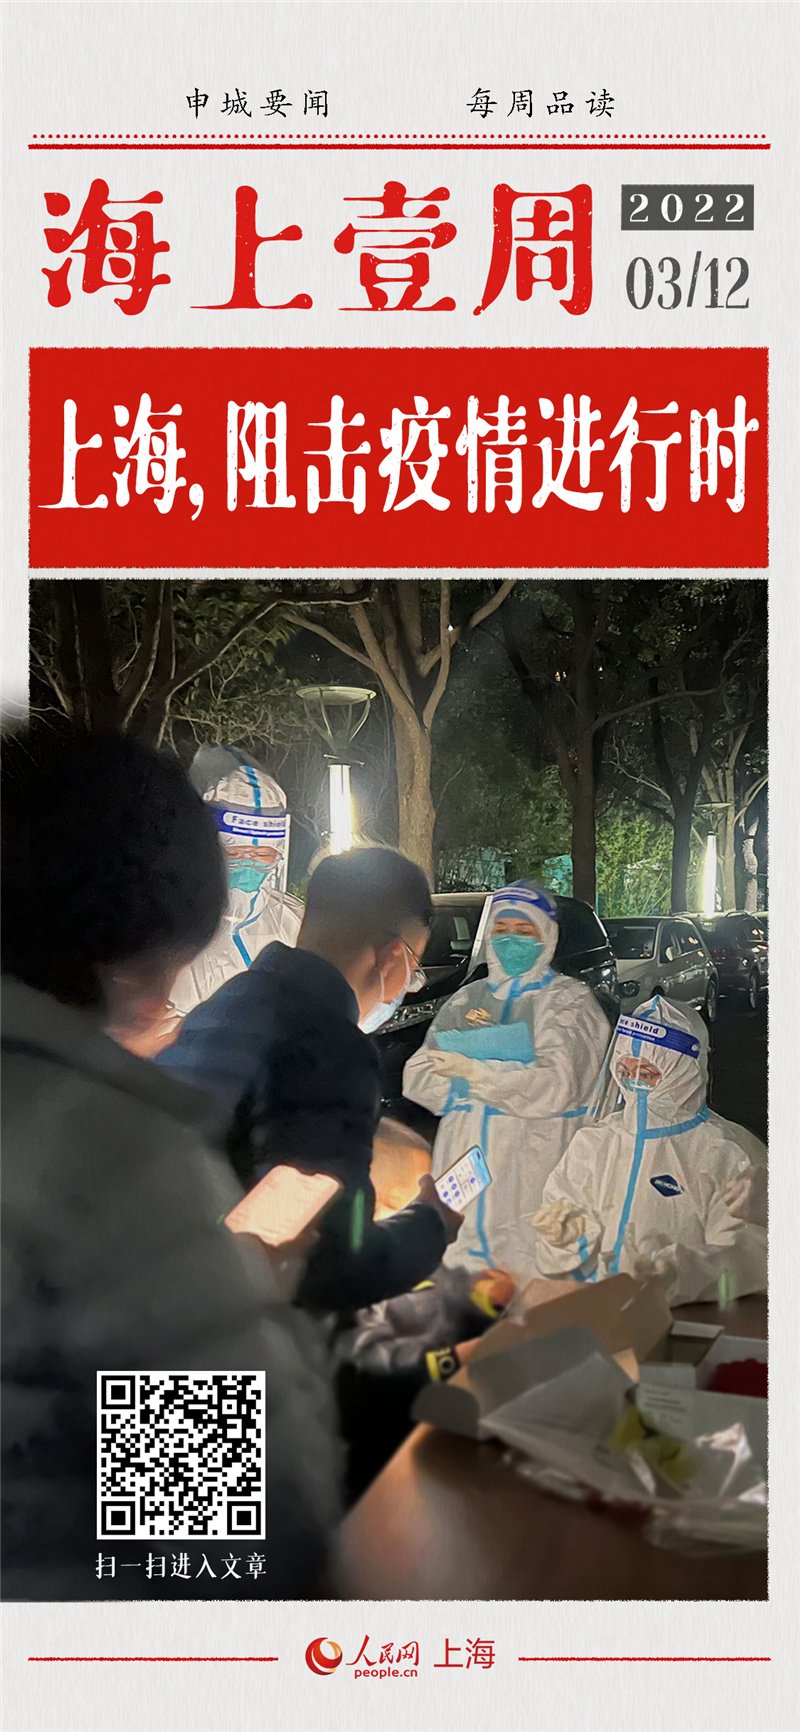 上海，阻击疫情进行时此刻，上海正在全力防控新冠肺炎疫情。根据相关公开信息，疫情最新情况简要汇总如下：1、截至3月11日24时，上海现有本土确诊病例39例，尚在医学观察中的本土无症状感染者632例。2、截至3月11日24时，上海市共有6地被划为中风险地区。3、上海市崇明区暂未发现本土确诊病例和无症状感染者。[详细]